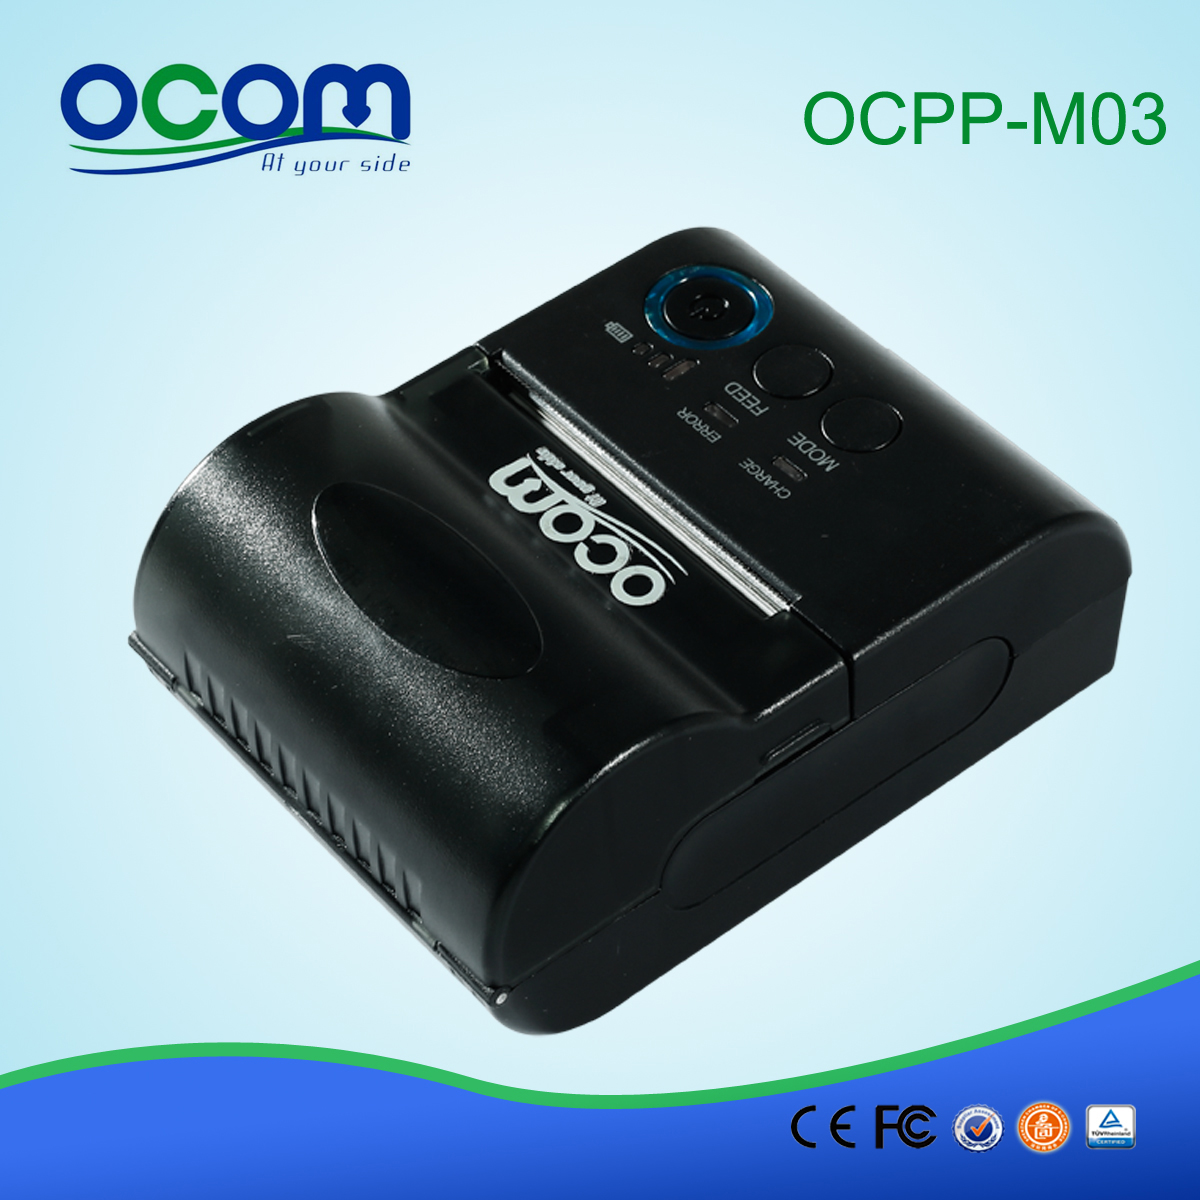 الروبوت ودائرة الرقابة الداخلية 58mm وبلوتوث المحمولة الصغيرة موبايل نقاط البيع استلام الطابعة الحرارية (OCPP-M03)